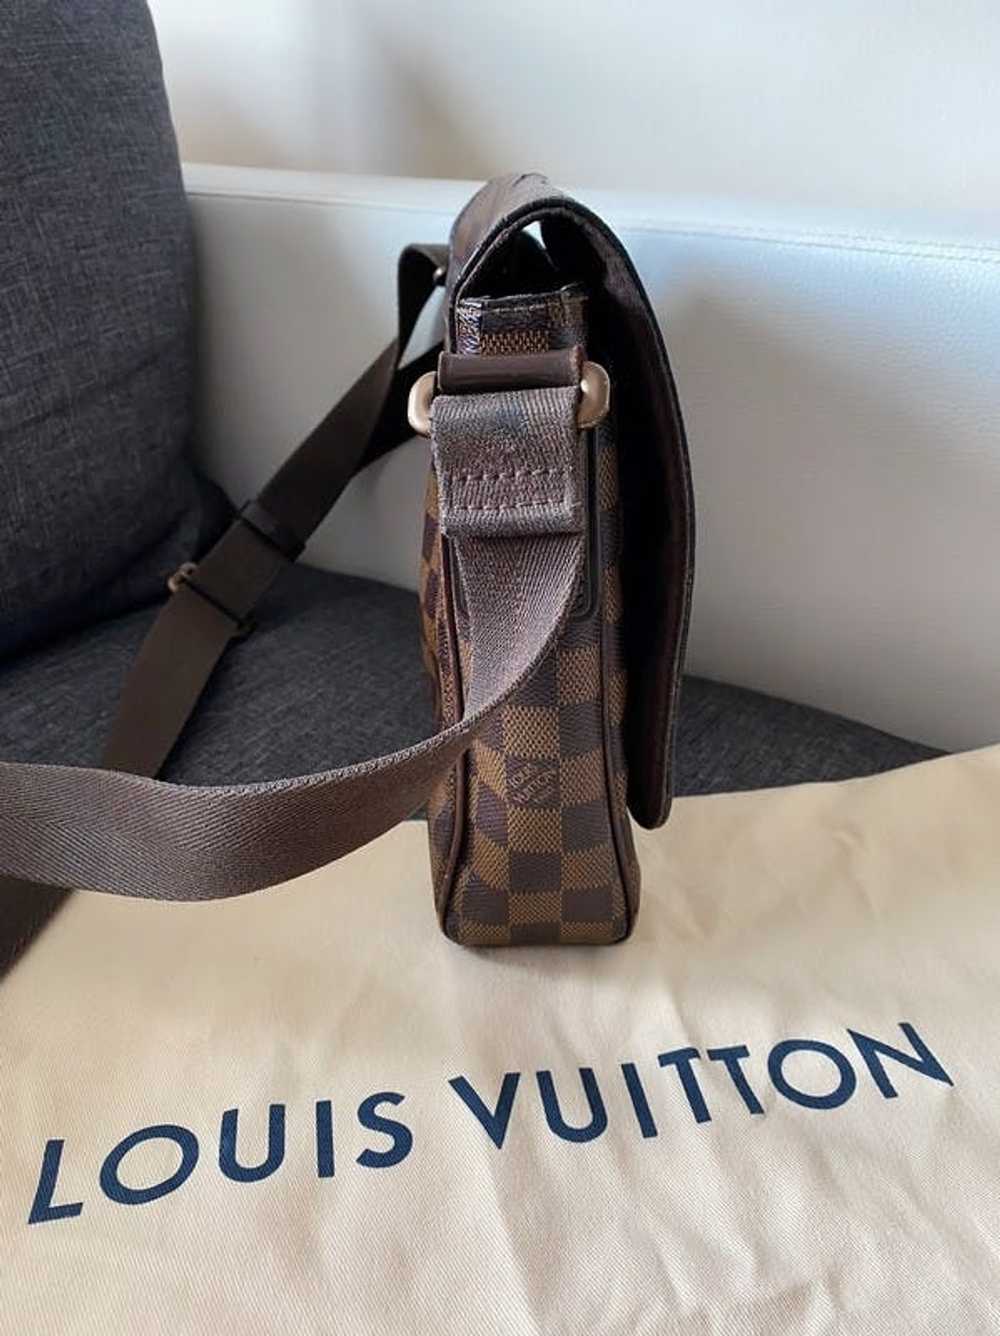 Louis Vuitton Louis Vuitton Shoulder Bag - image 5